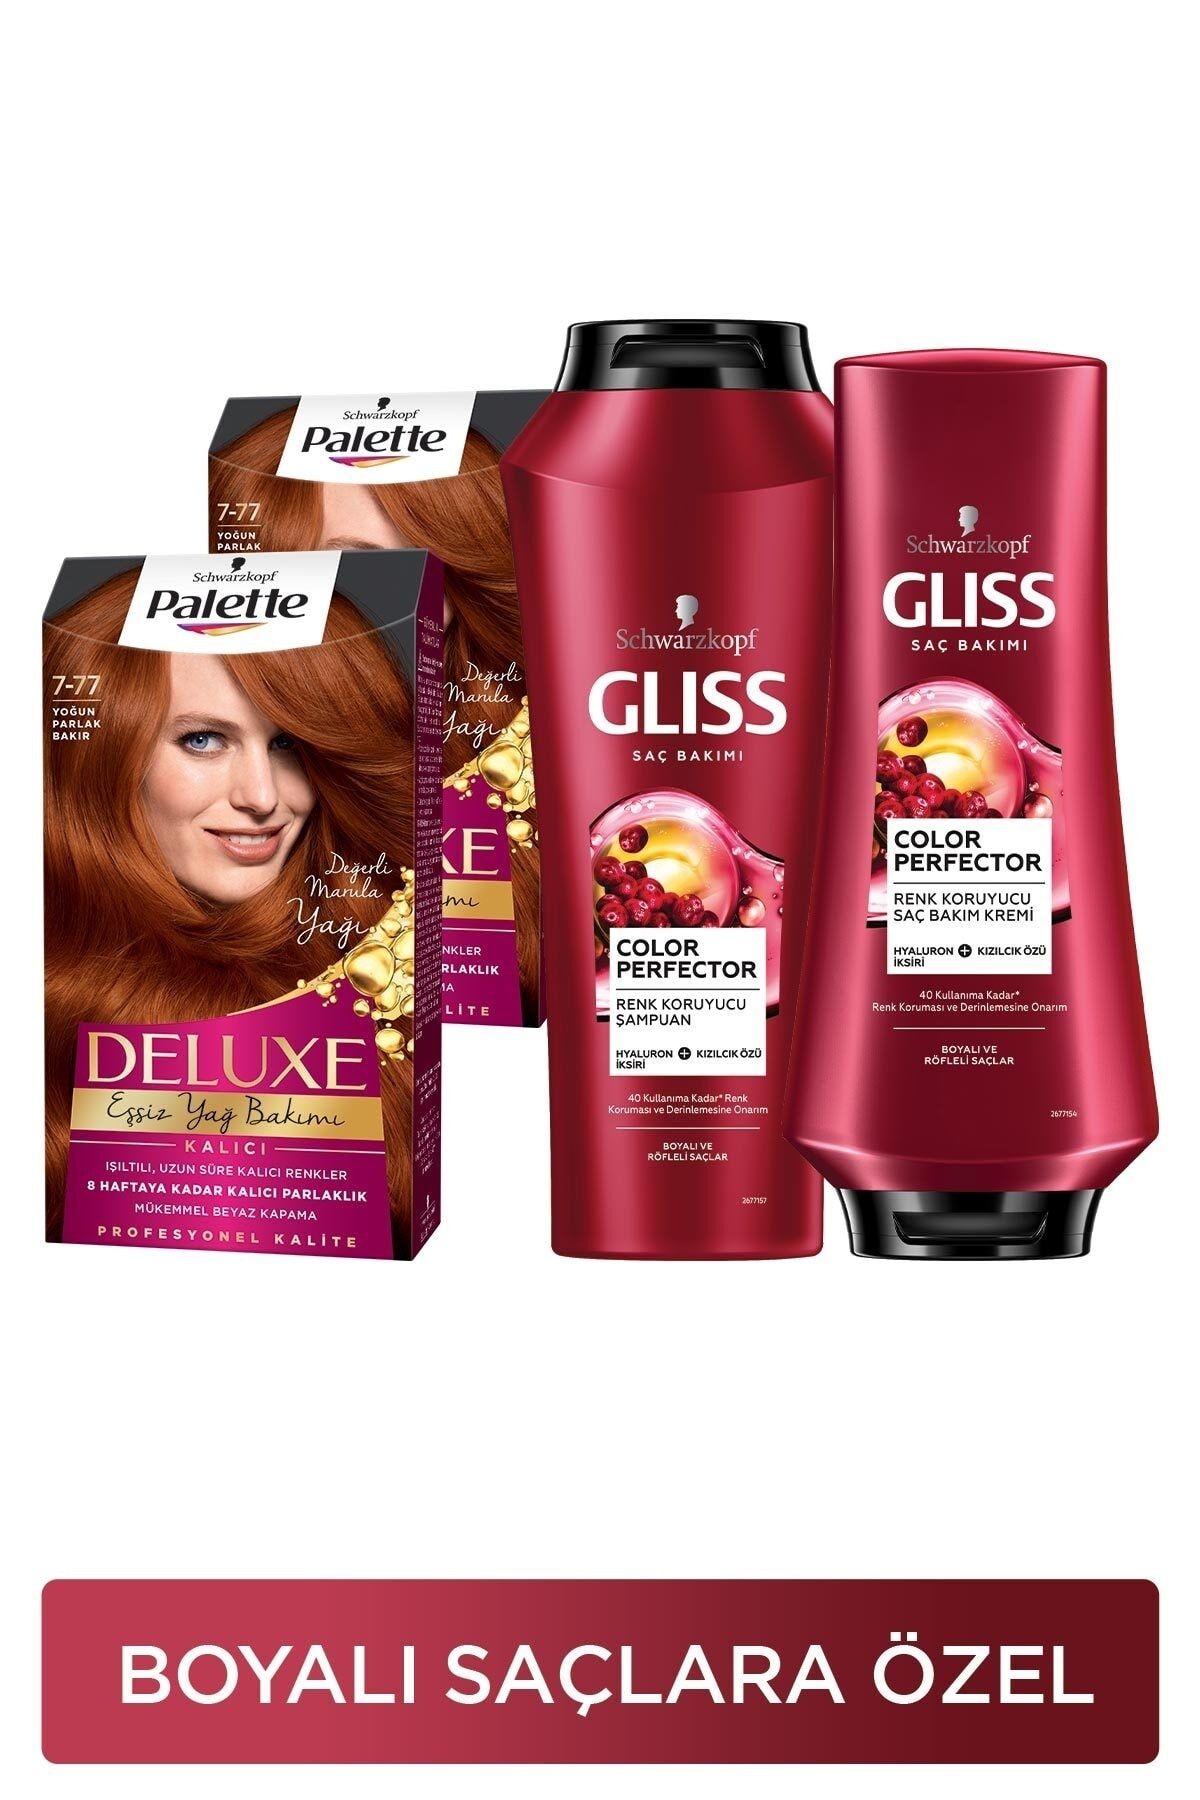 Gliss Palette Deluxe 7-77 Yoğun Parlak Bakırx2 Adet+ Color Perfector Renk Koruyucu Şampuan 500ml